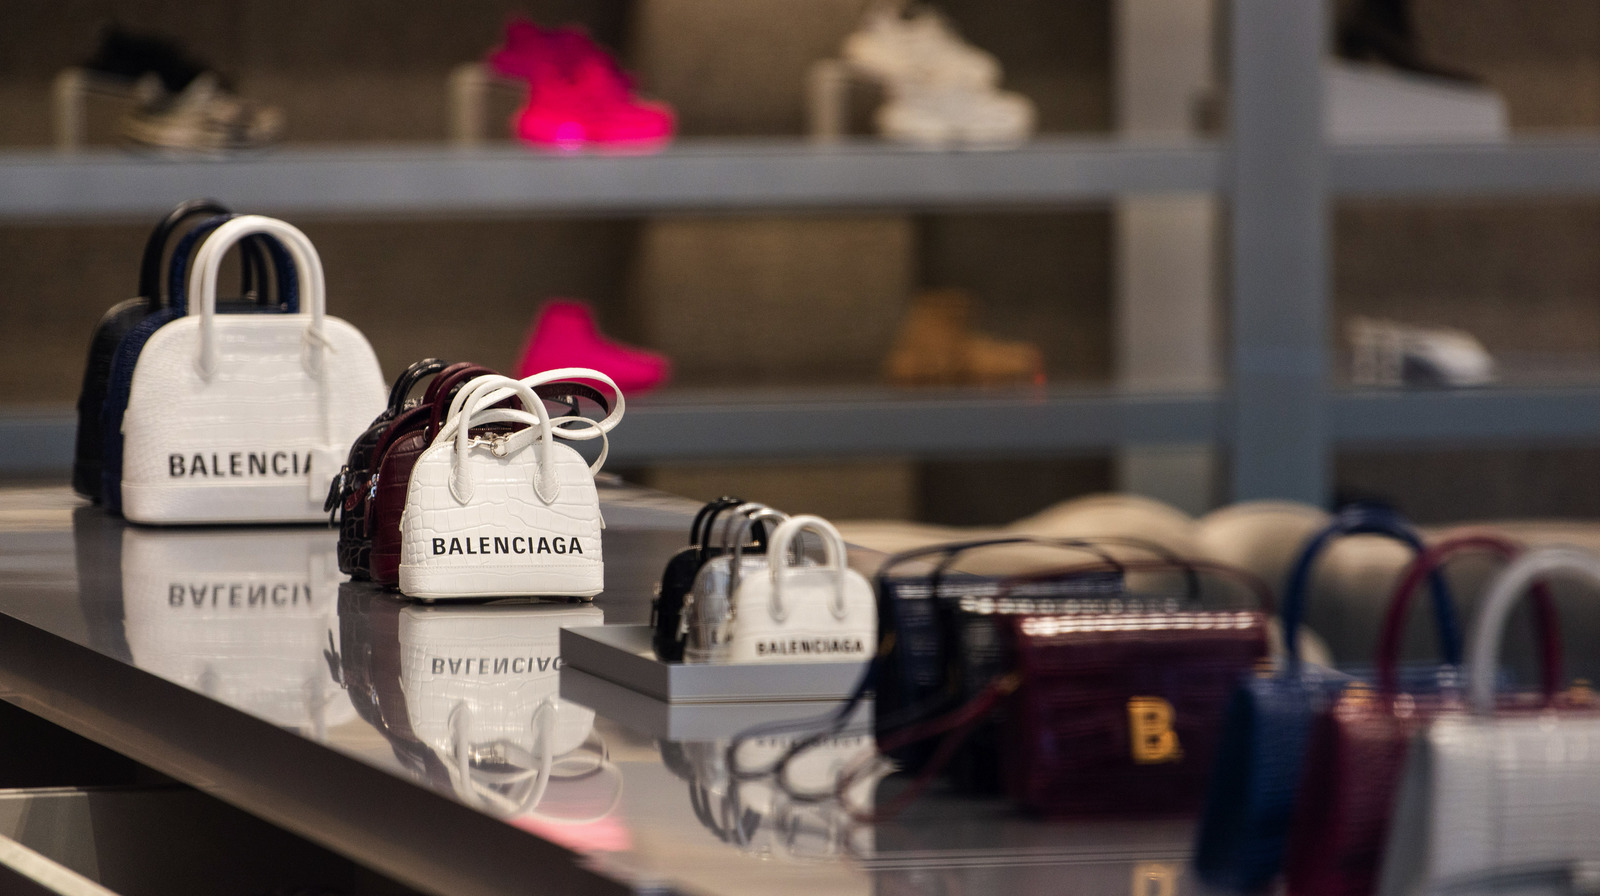 Why Is Balenciaga So Expensive?